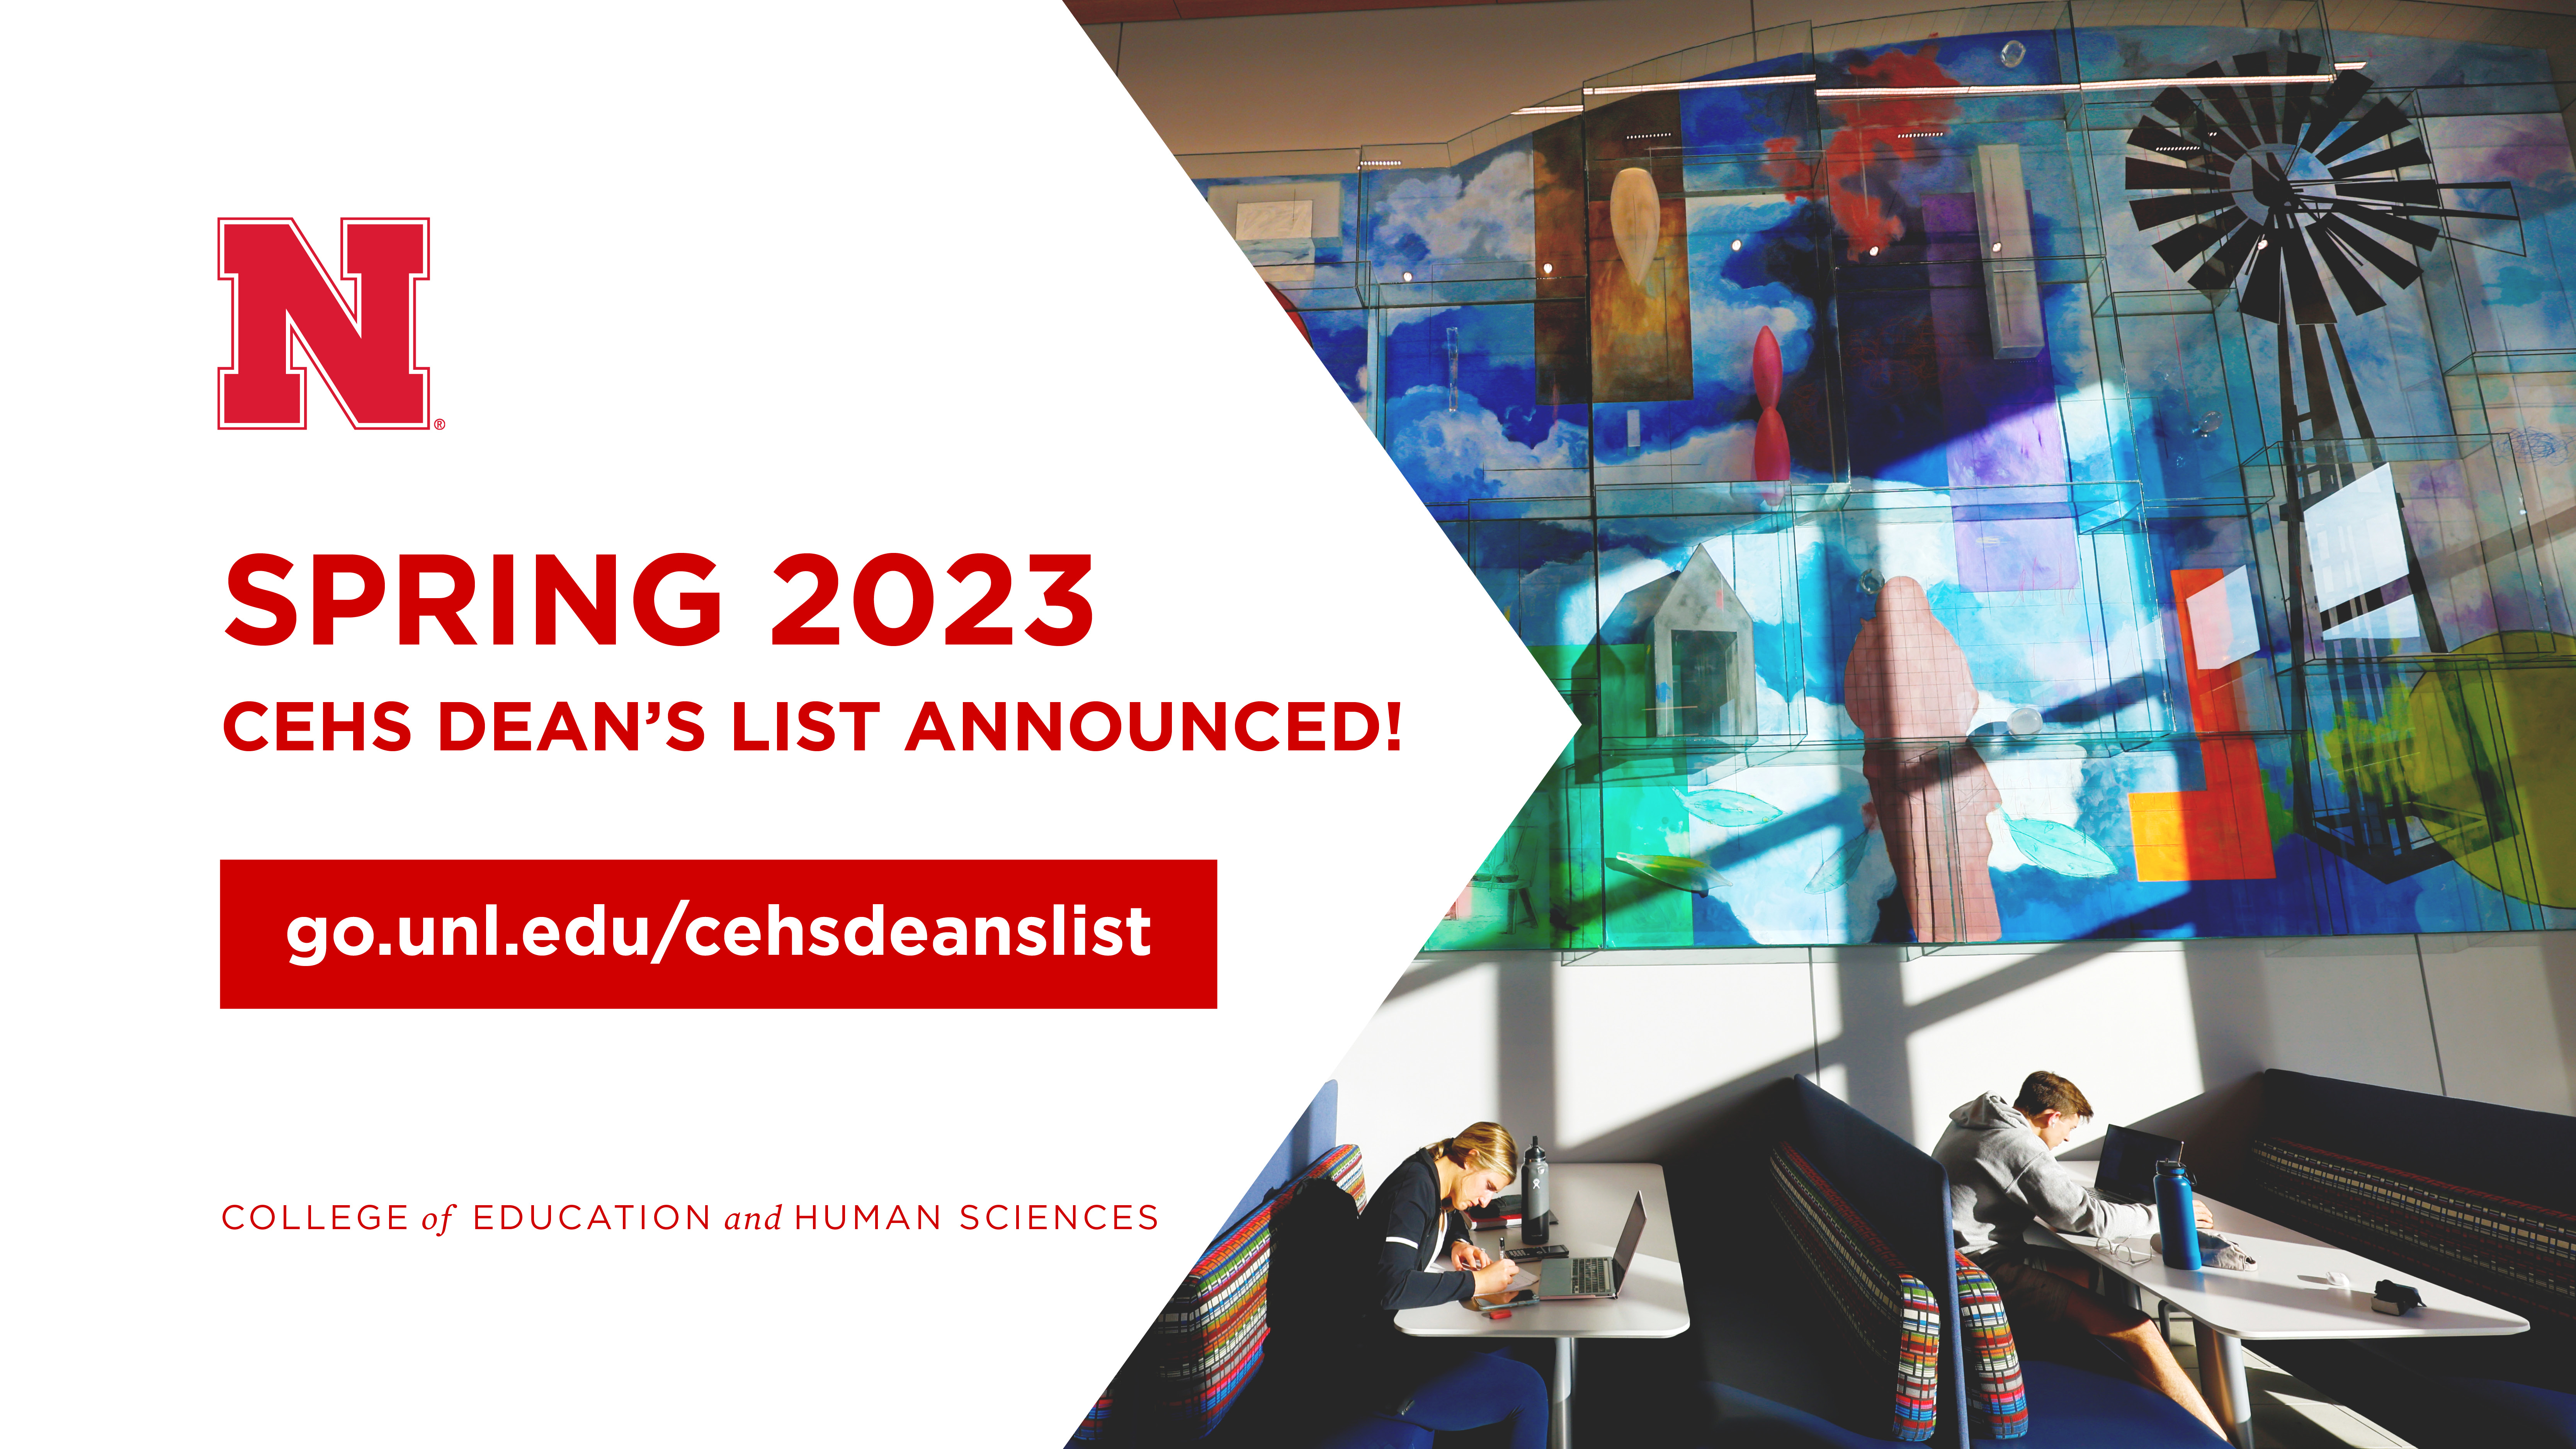 Spring 2023 Dean's List available at go.unl.edu/cehsdeanslist 